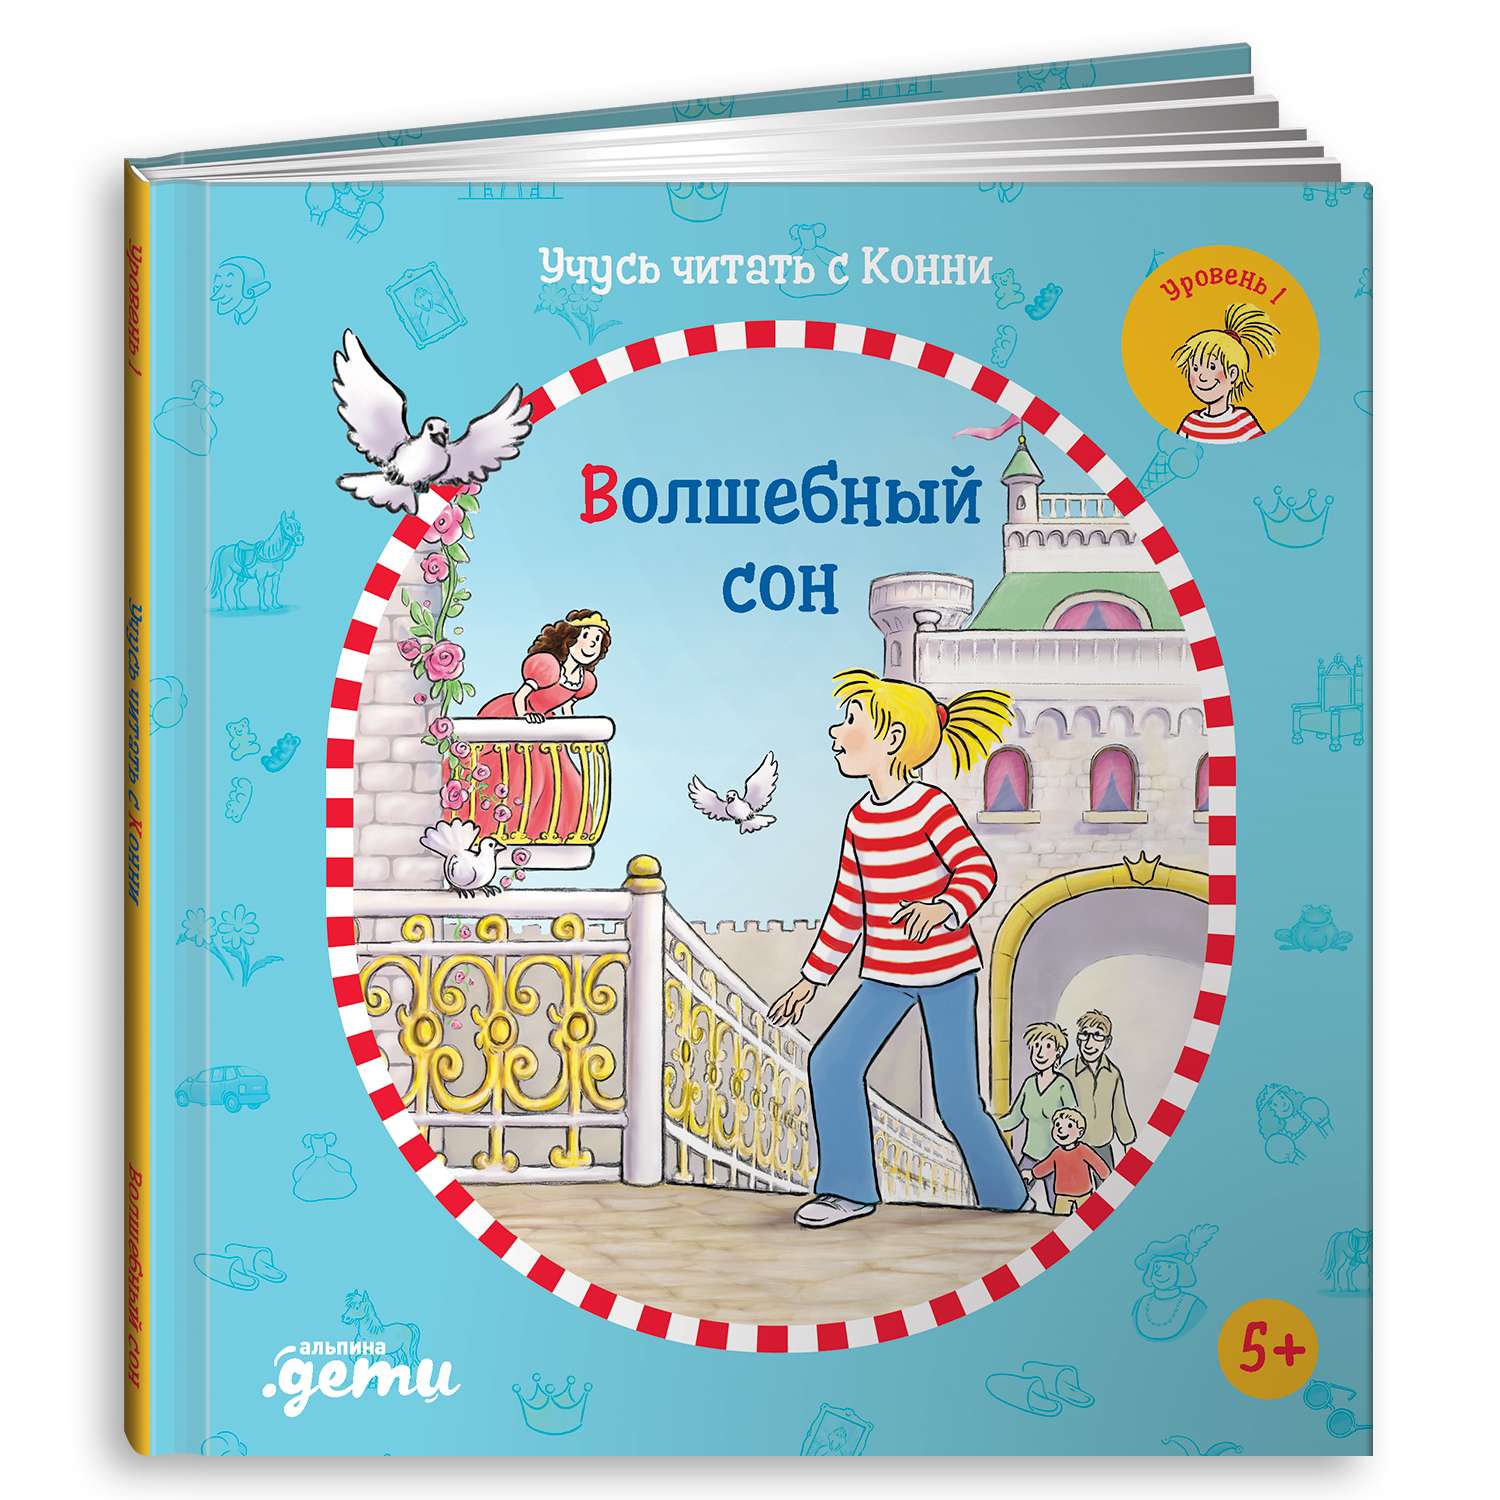 Детские книги. Купить книги для детей в интернет-магазине: Киев и Украина